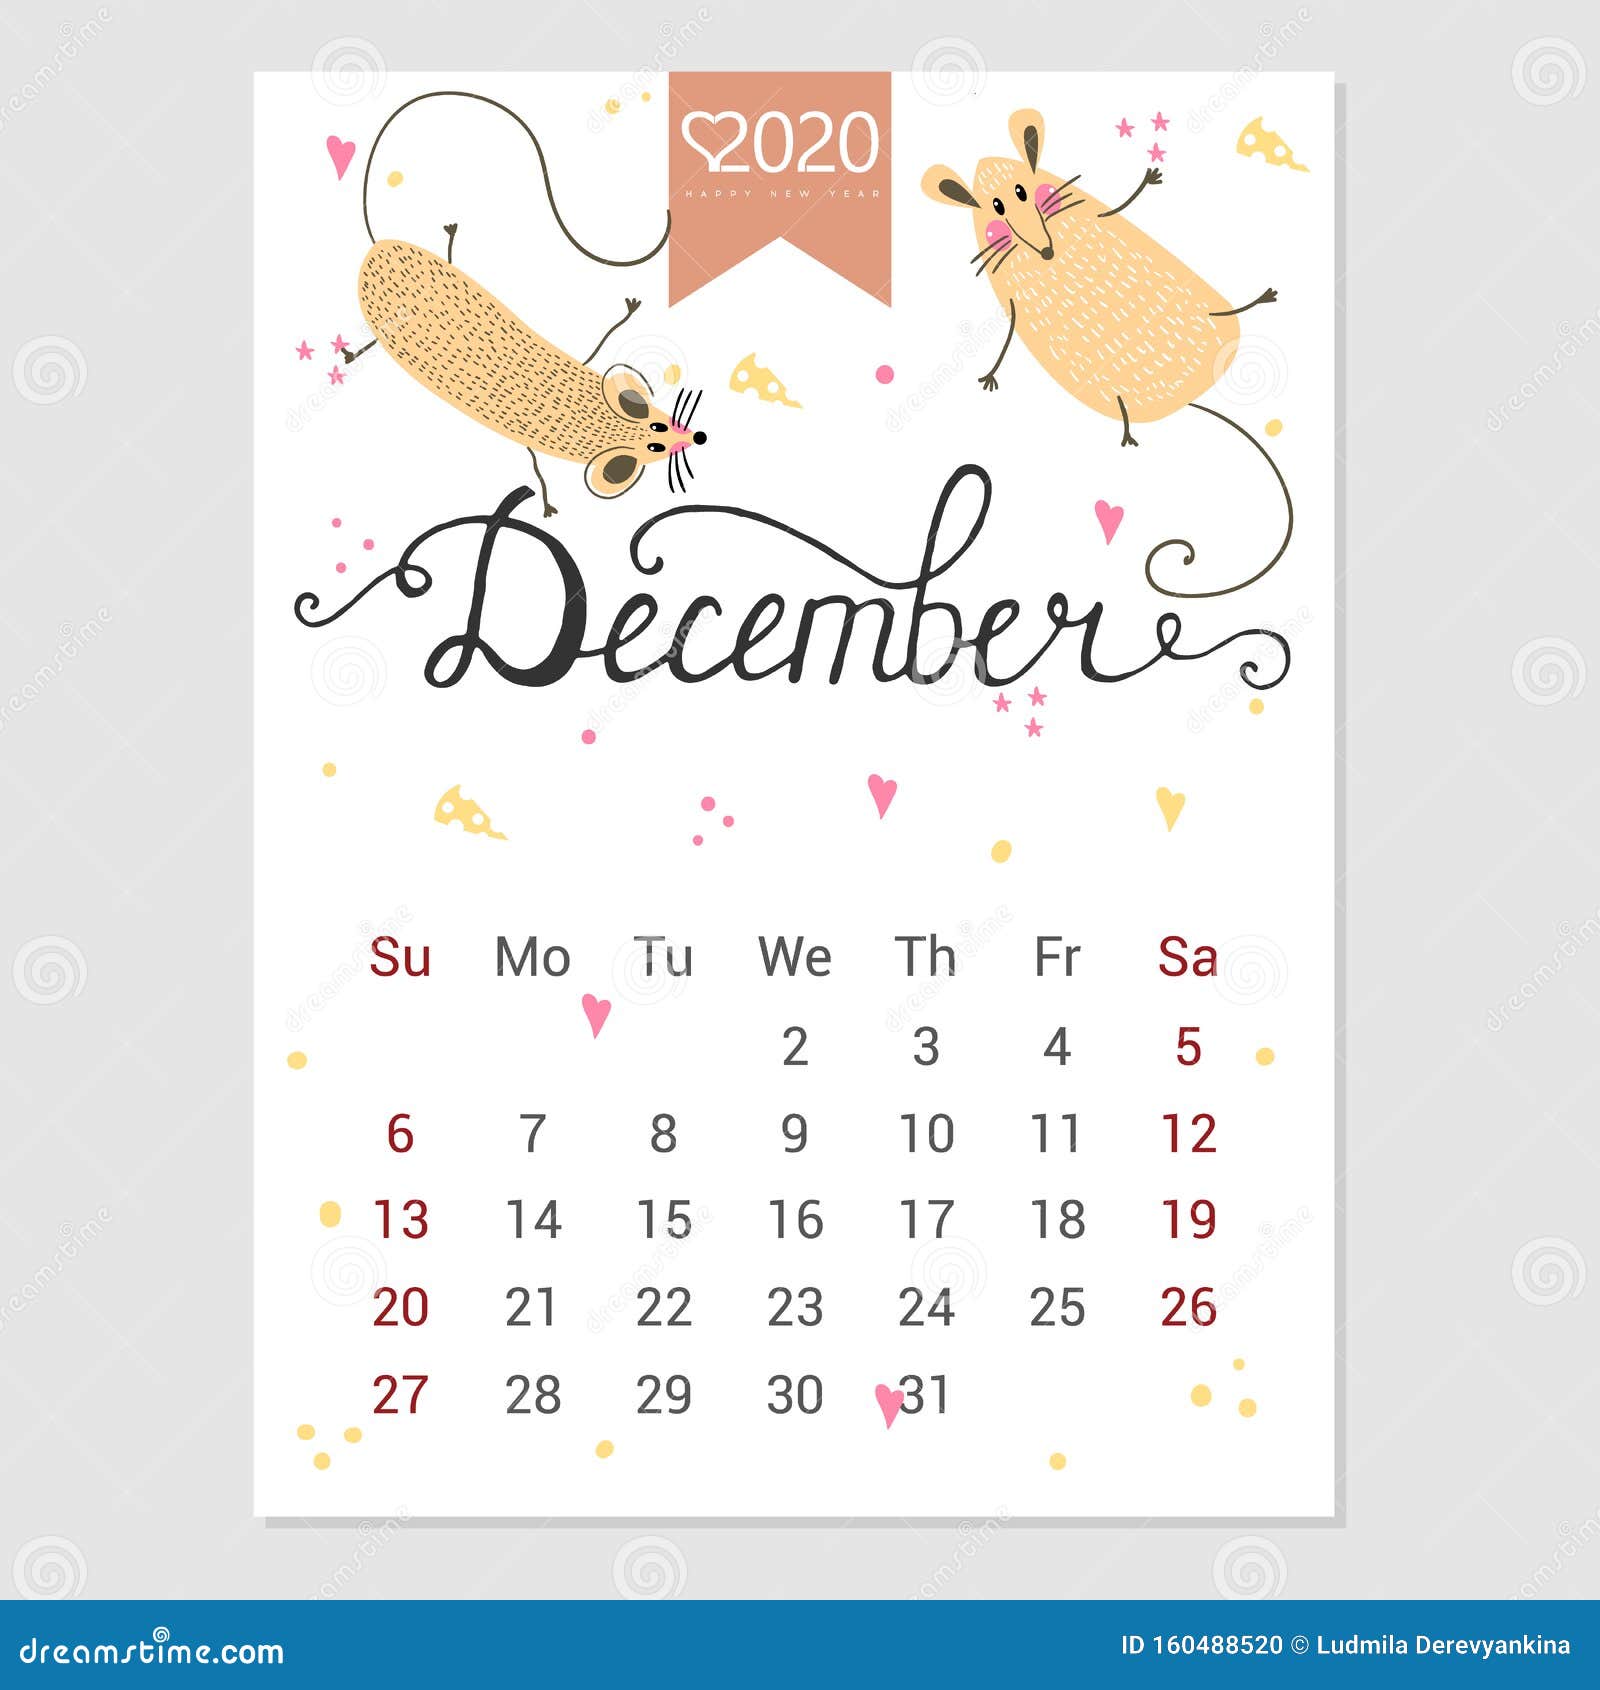 Календарь декабрь 2024 года. Милый календарь май 2020. Декабрь 2020 года календарь. Календарики на декабрь милые.